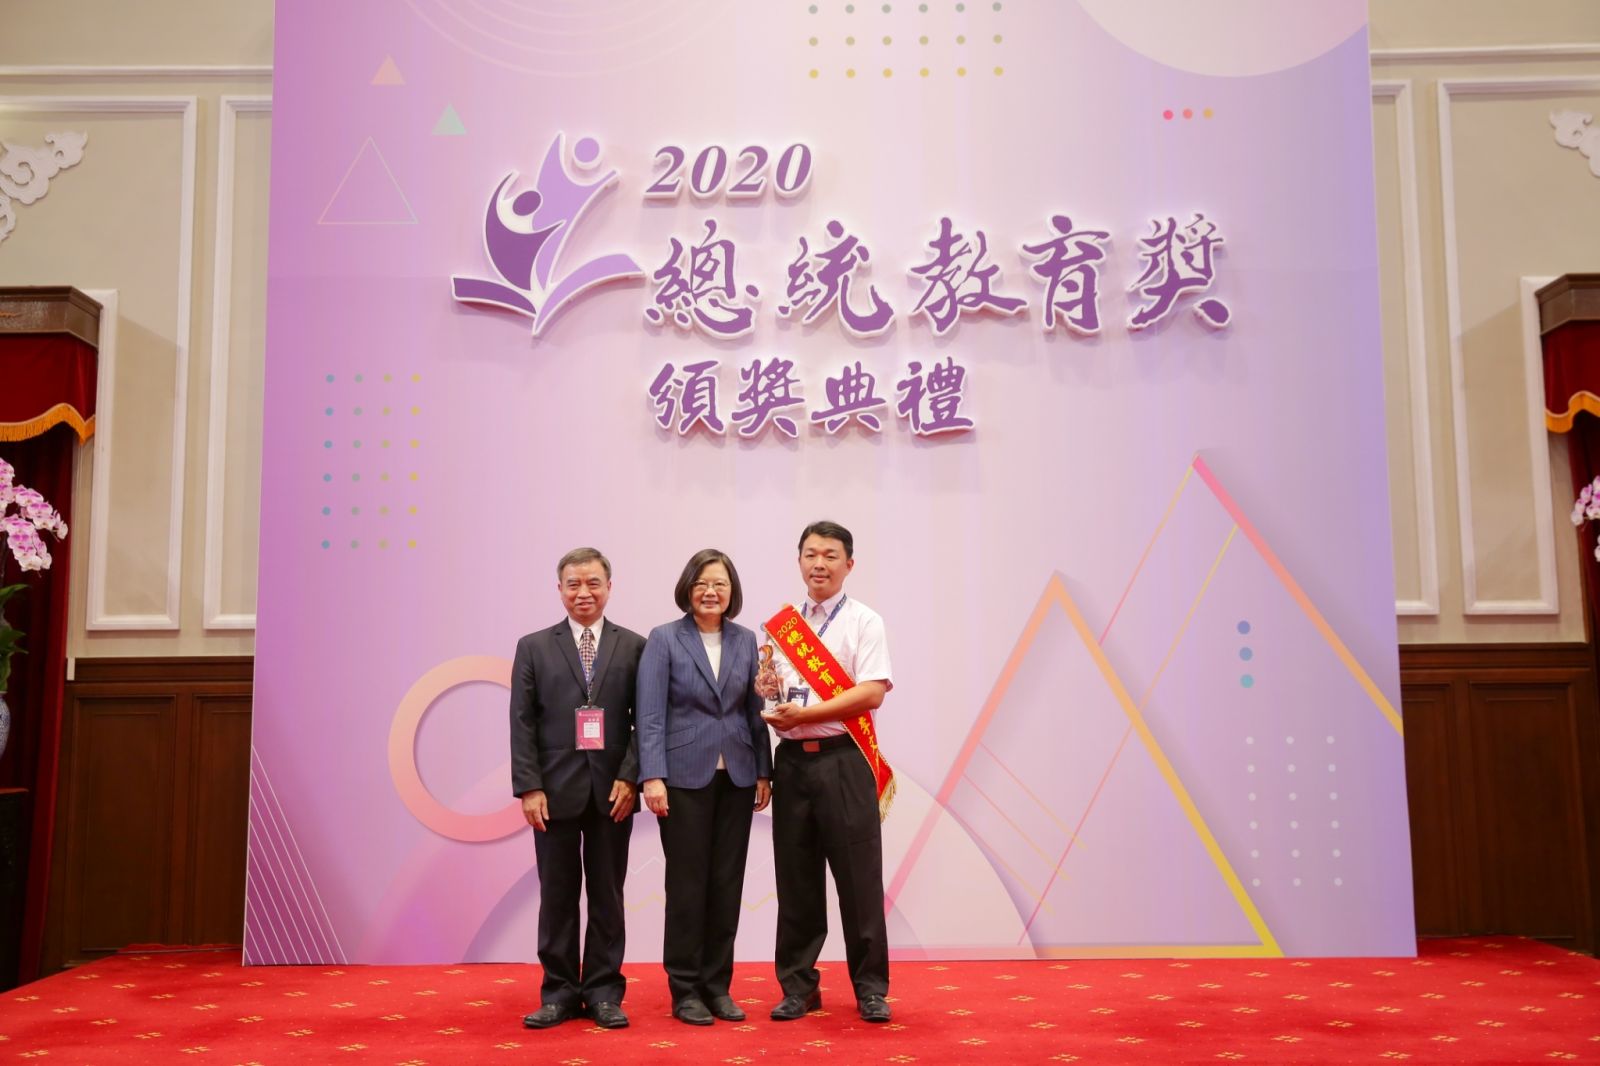 李文煥老師於2020年獲總統教育獎。